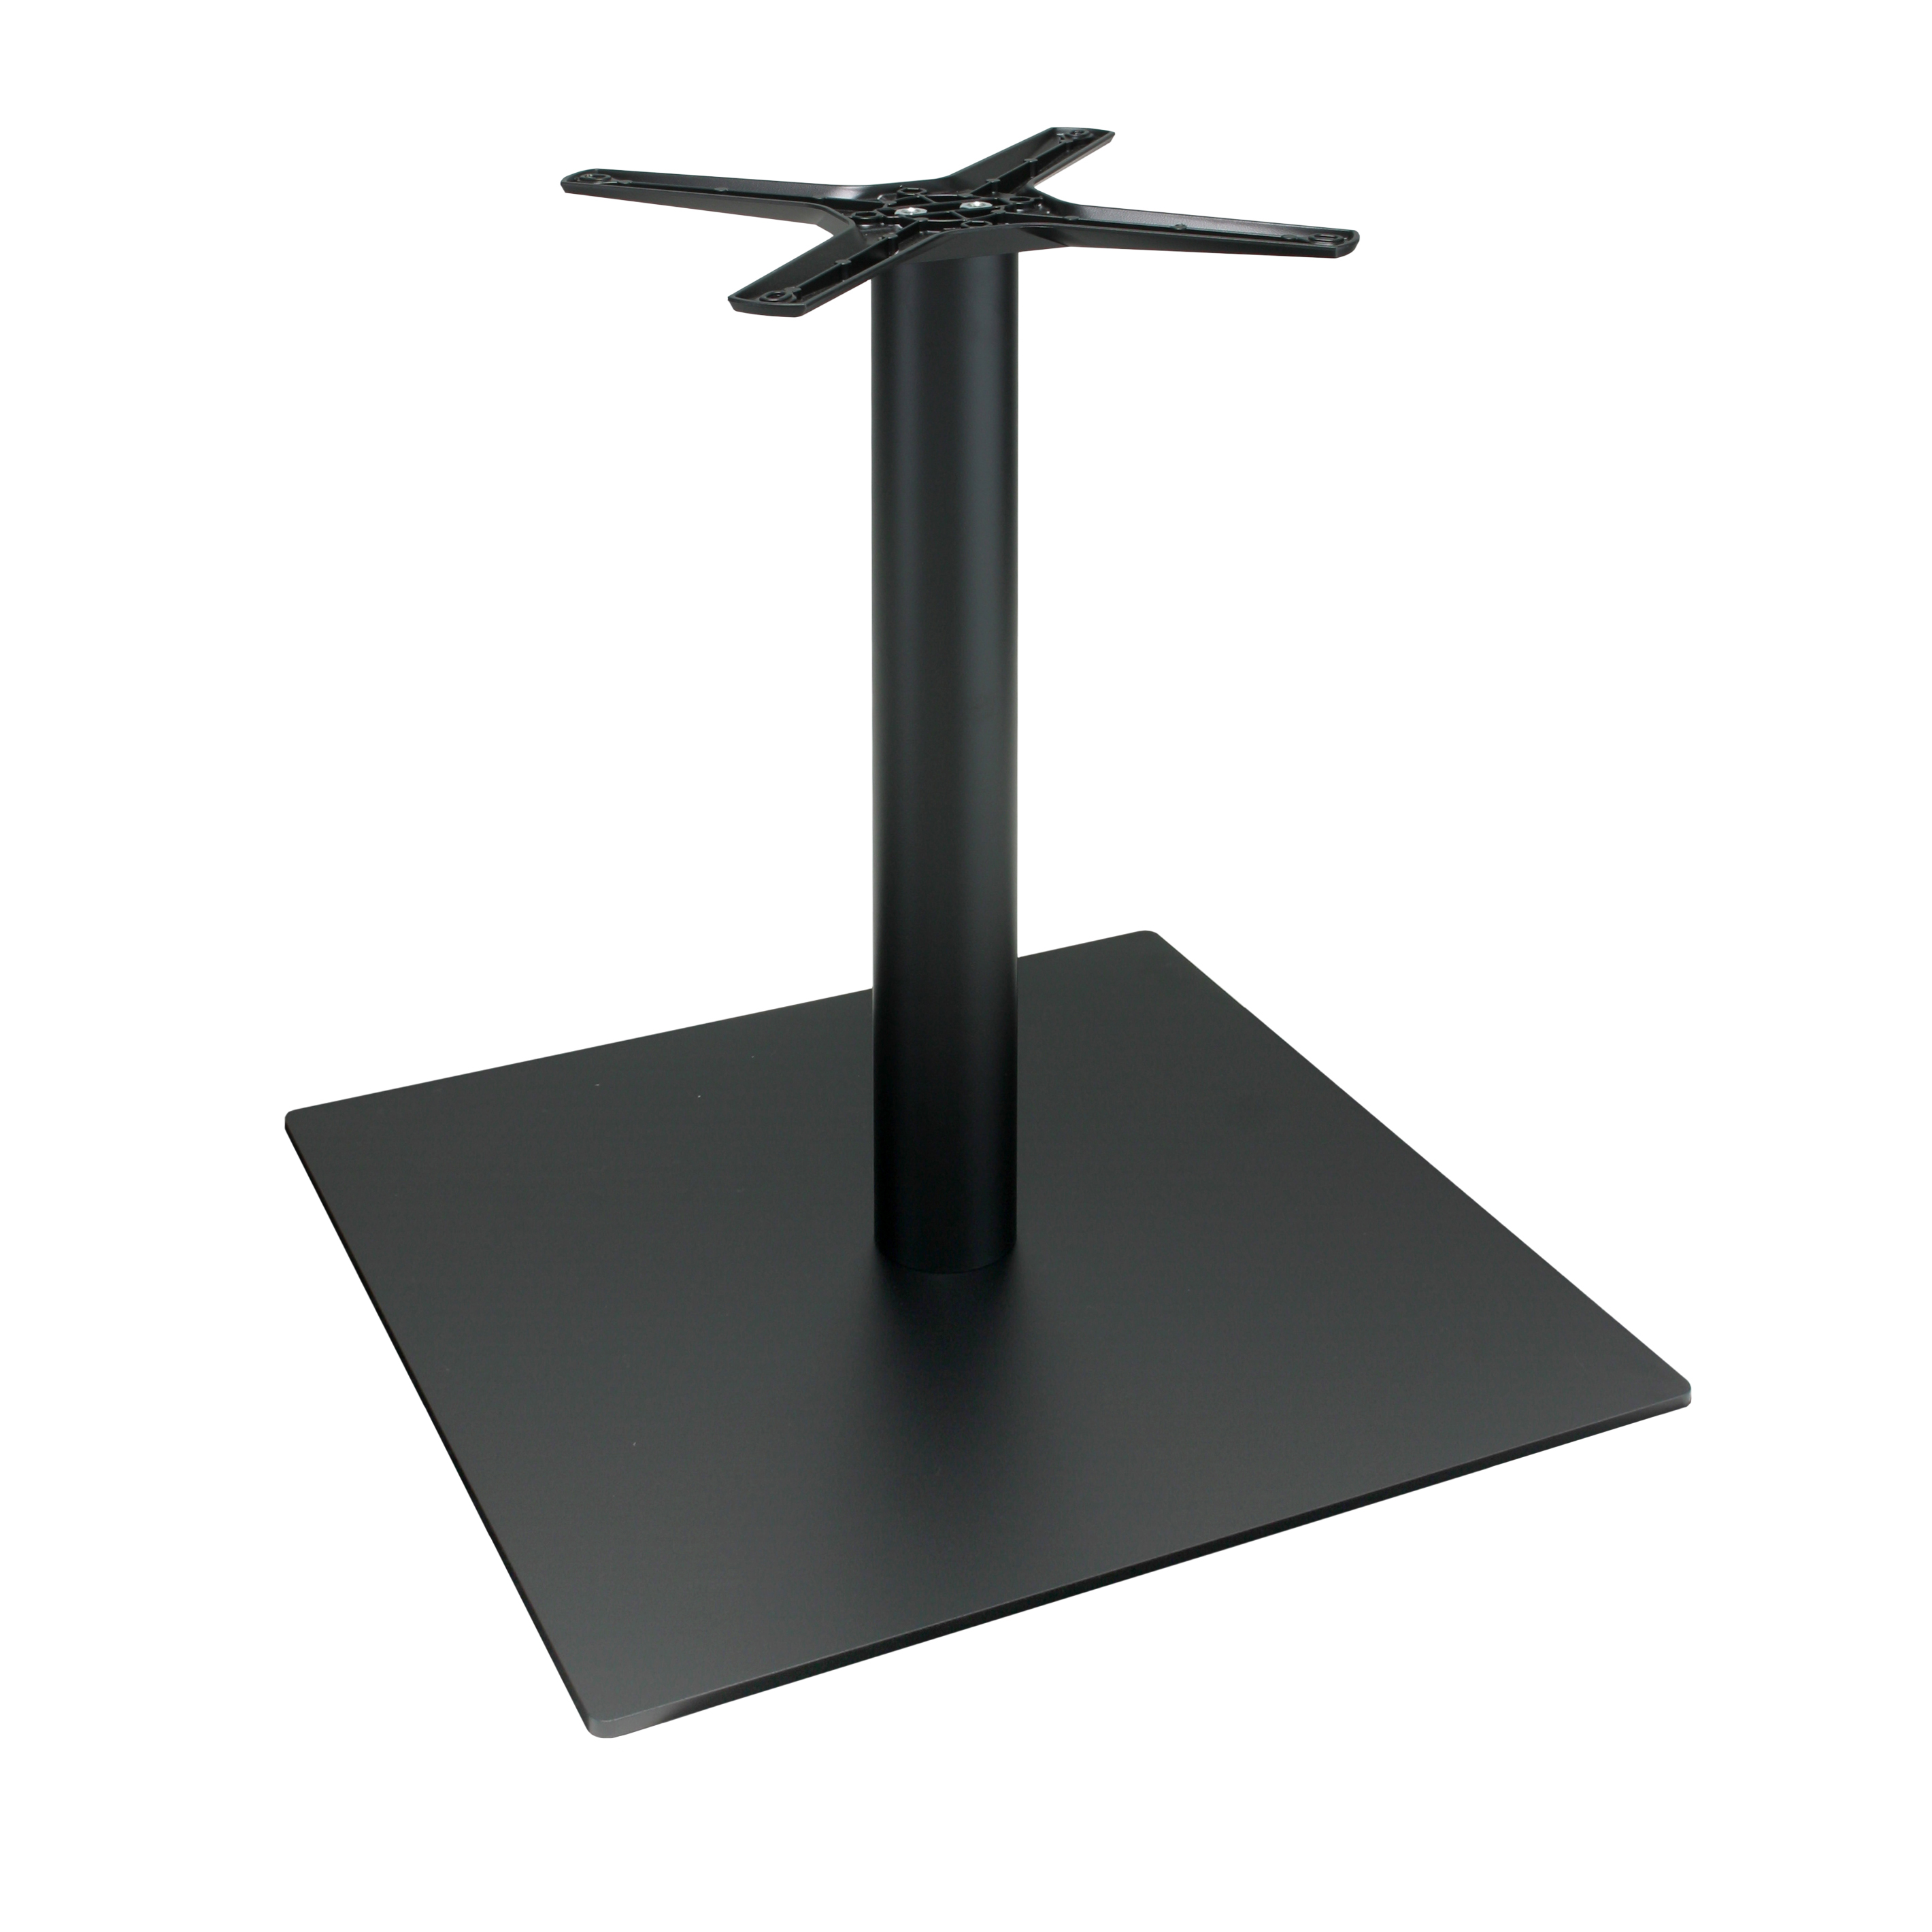 Tischgestell P060F aus Metall, pulverbeschichtet schwarz, quadratisch